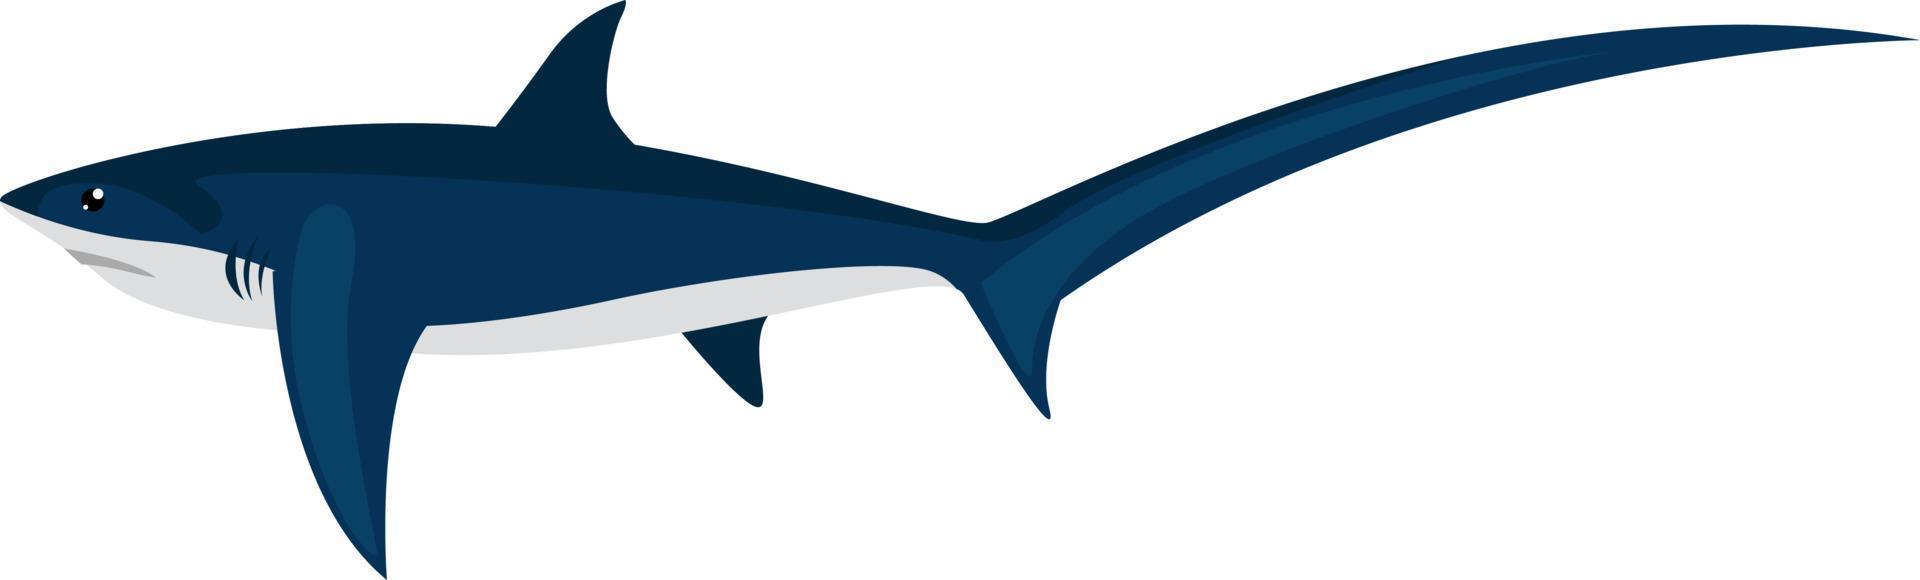 Fuchshai, Illustration, Vektor auf weißem Hintergrund.